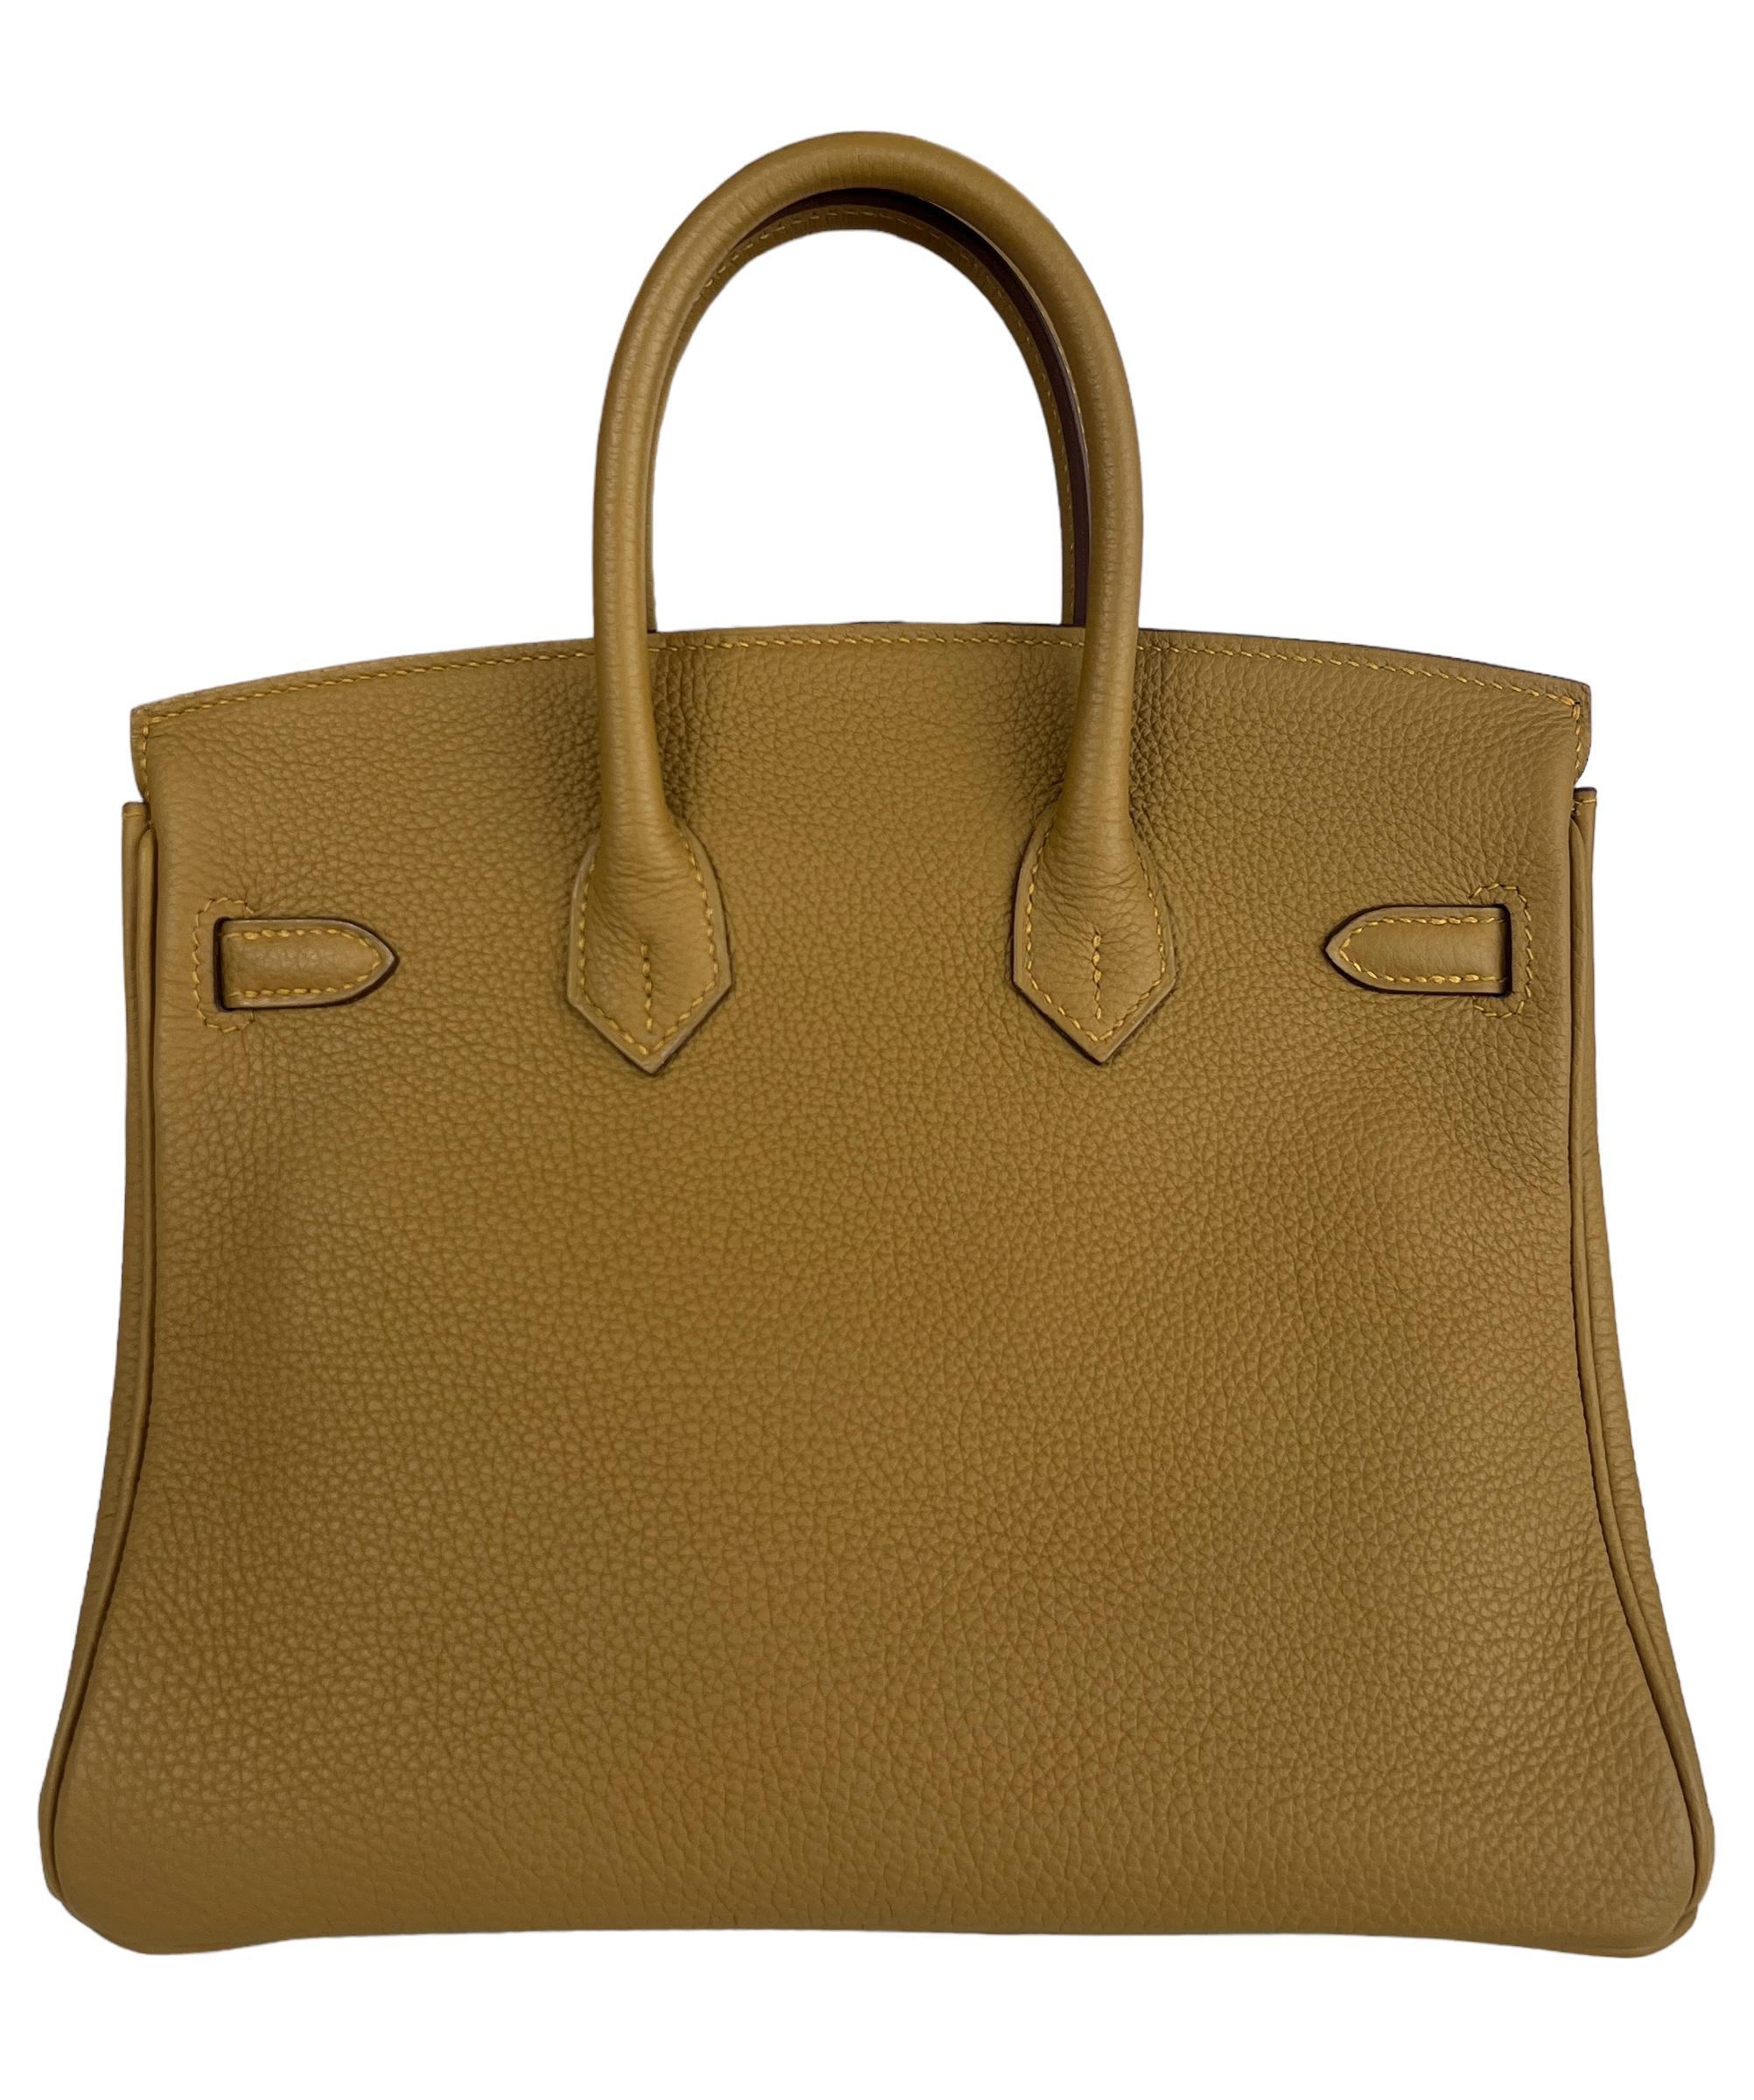 Hermes Birkin 25 Bronze Dore Togo Leather Handbag Bag Gold Hardware RARE In New Condition For Sale In Miami, FL